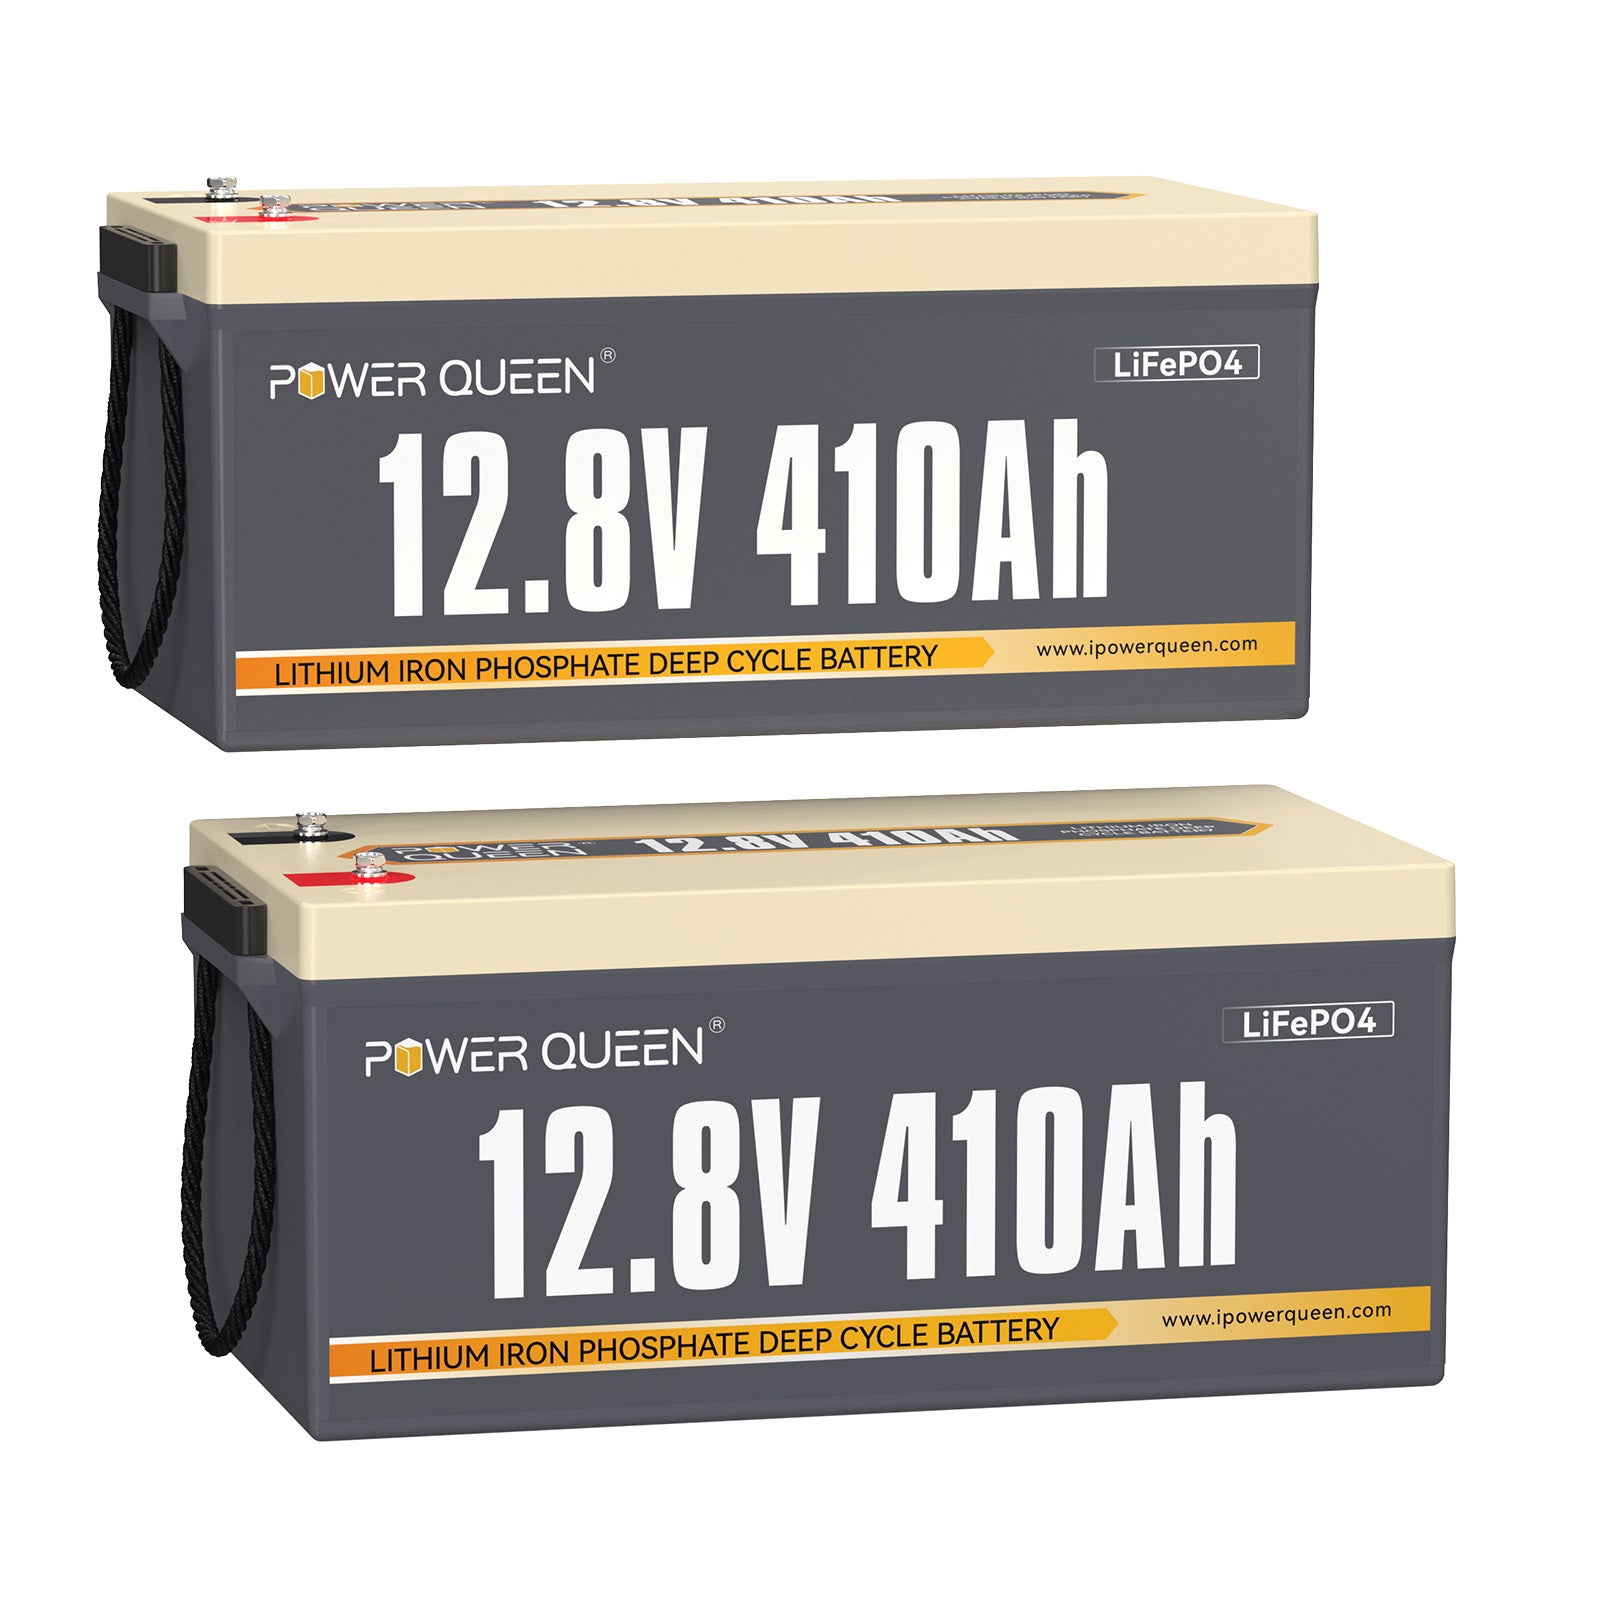 【0% IVA】Batería LiFePO4 Power Queen de 12,8 V 410 Ah, BMS integrado de 250 A